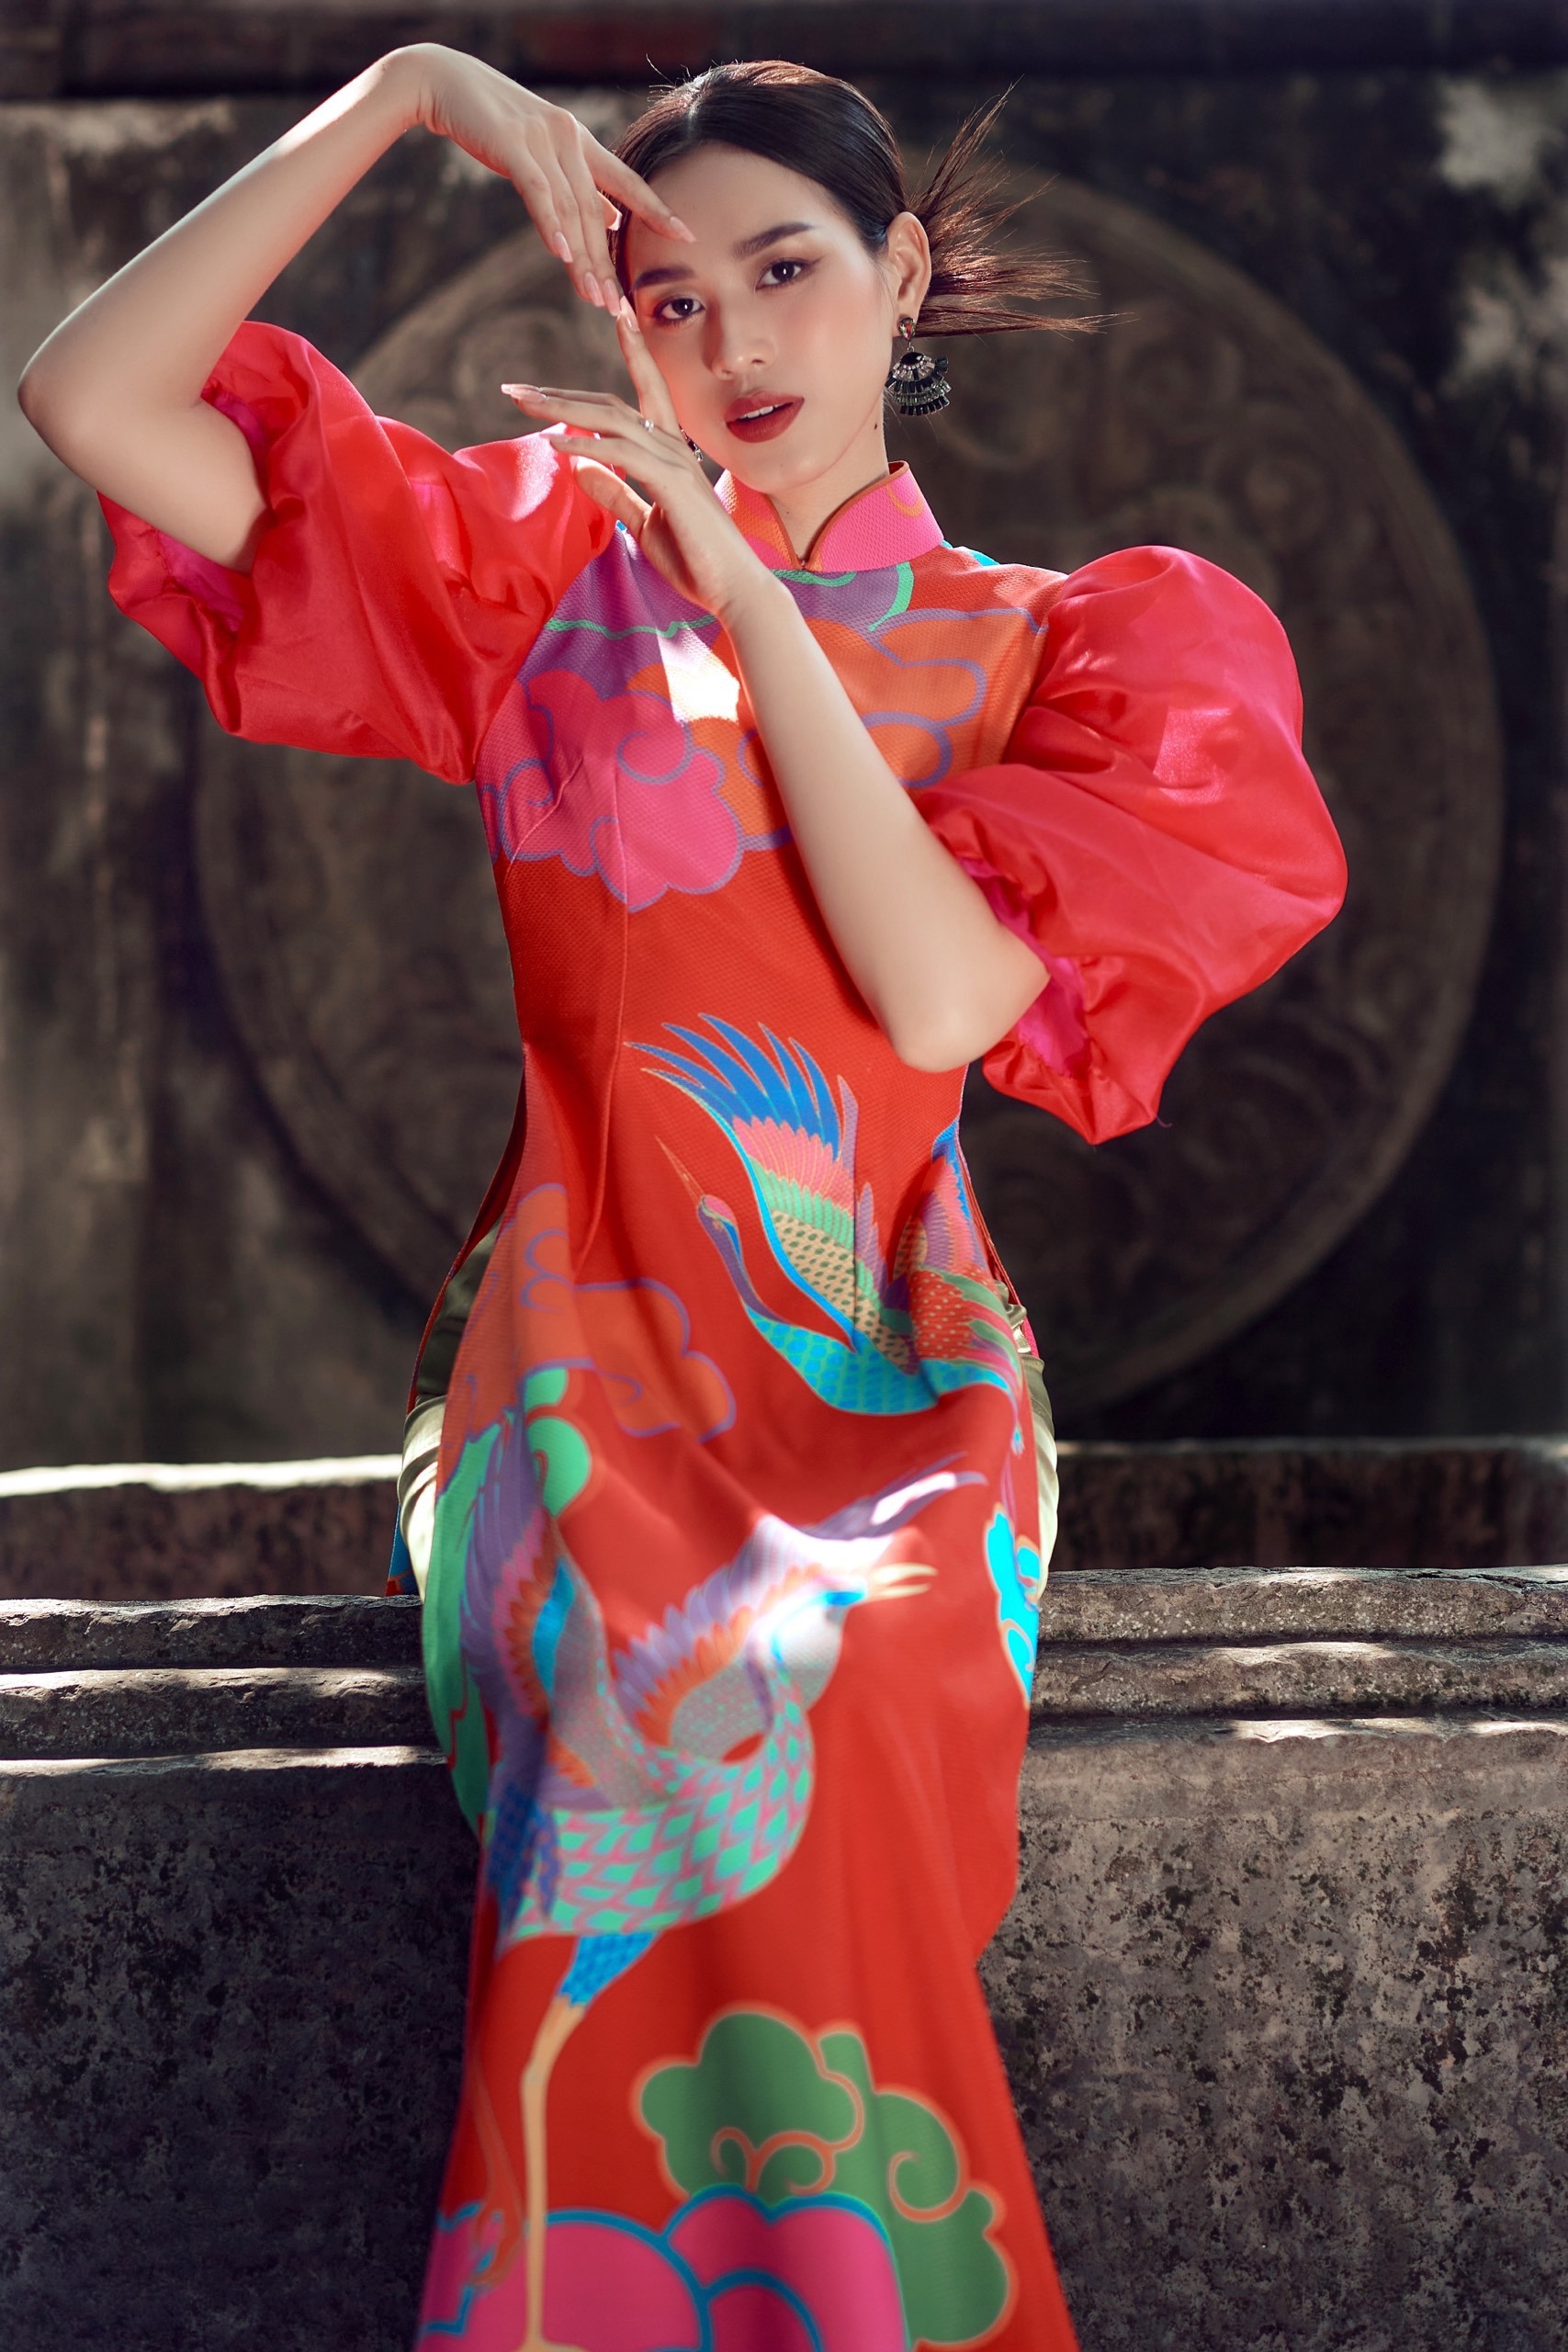 Khoác trên mình tà áo dài của NTK Trần Thiện Khánh, Đỗ Hà đã khắc hoạ chân thật vẻ đẹp truyền thống người phụ nữ Việt Nam. Hình ảnh ngọt ngào dịu dàng cộng với thần thái cuốn hút đã tạo nên một hình tượng Đỗ Hà kiêu sa, lộng lẫy.